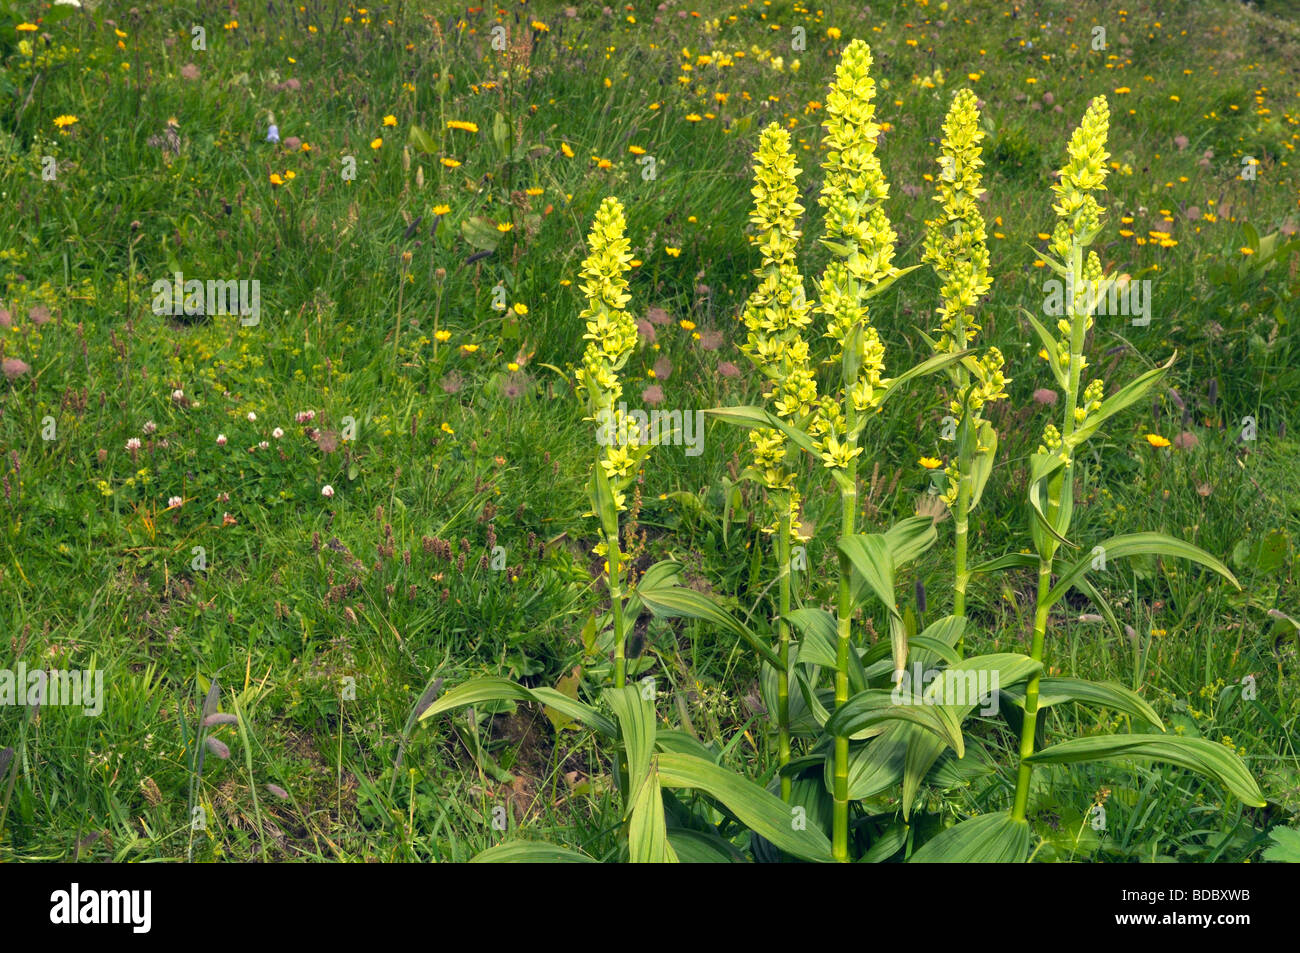 Vératre blanc (Veratrum album), flowering plant Banque D'Images